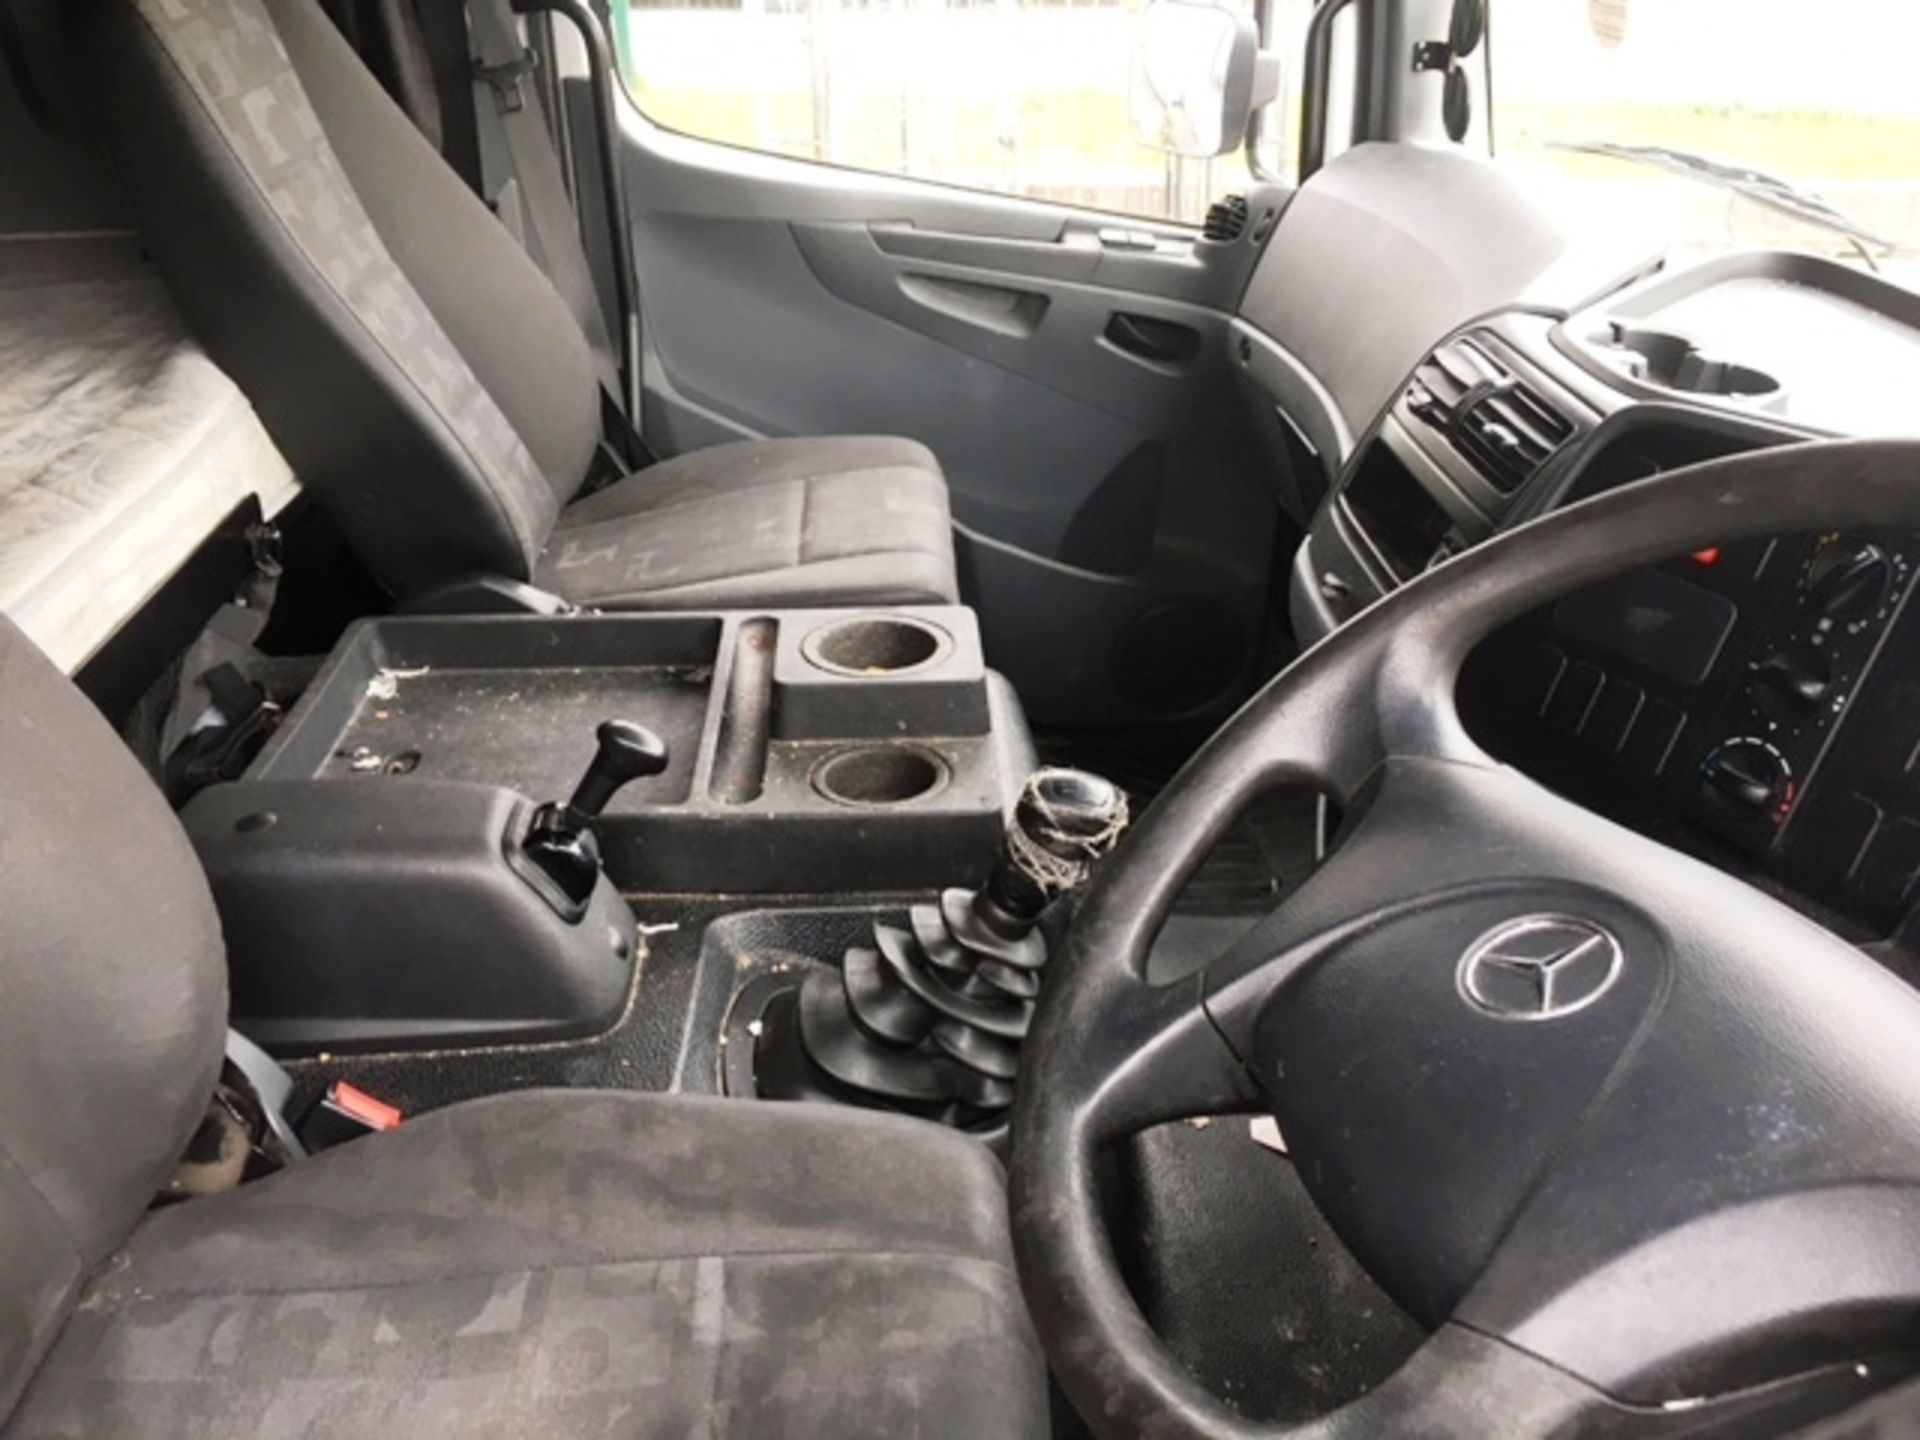 Mercedes Atego 7.5T Box Van - DK56 EAC - Image 6 of 8